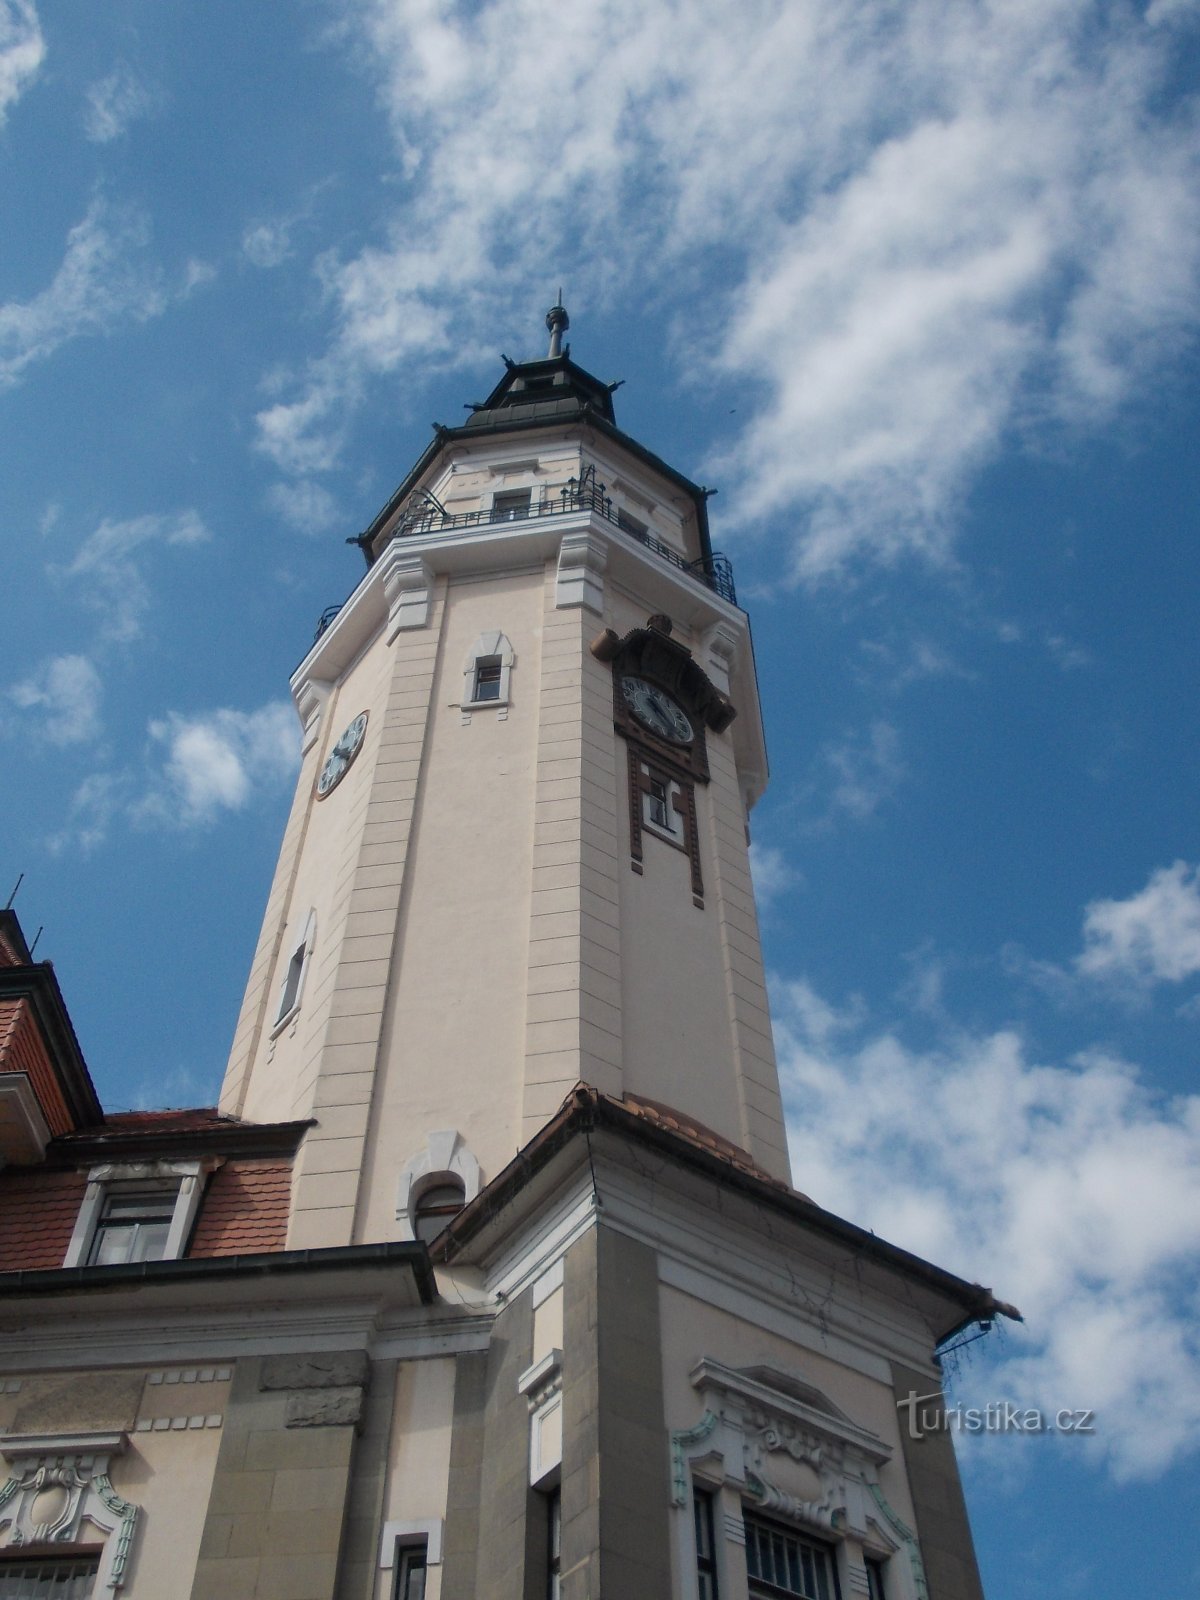 der Turm des Rathauses ist 63 Meter hoch